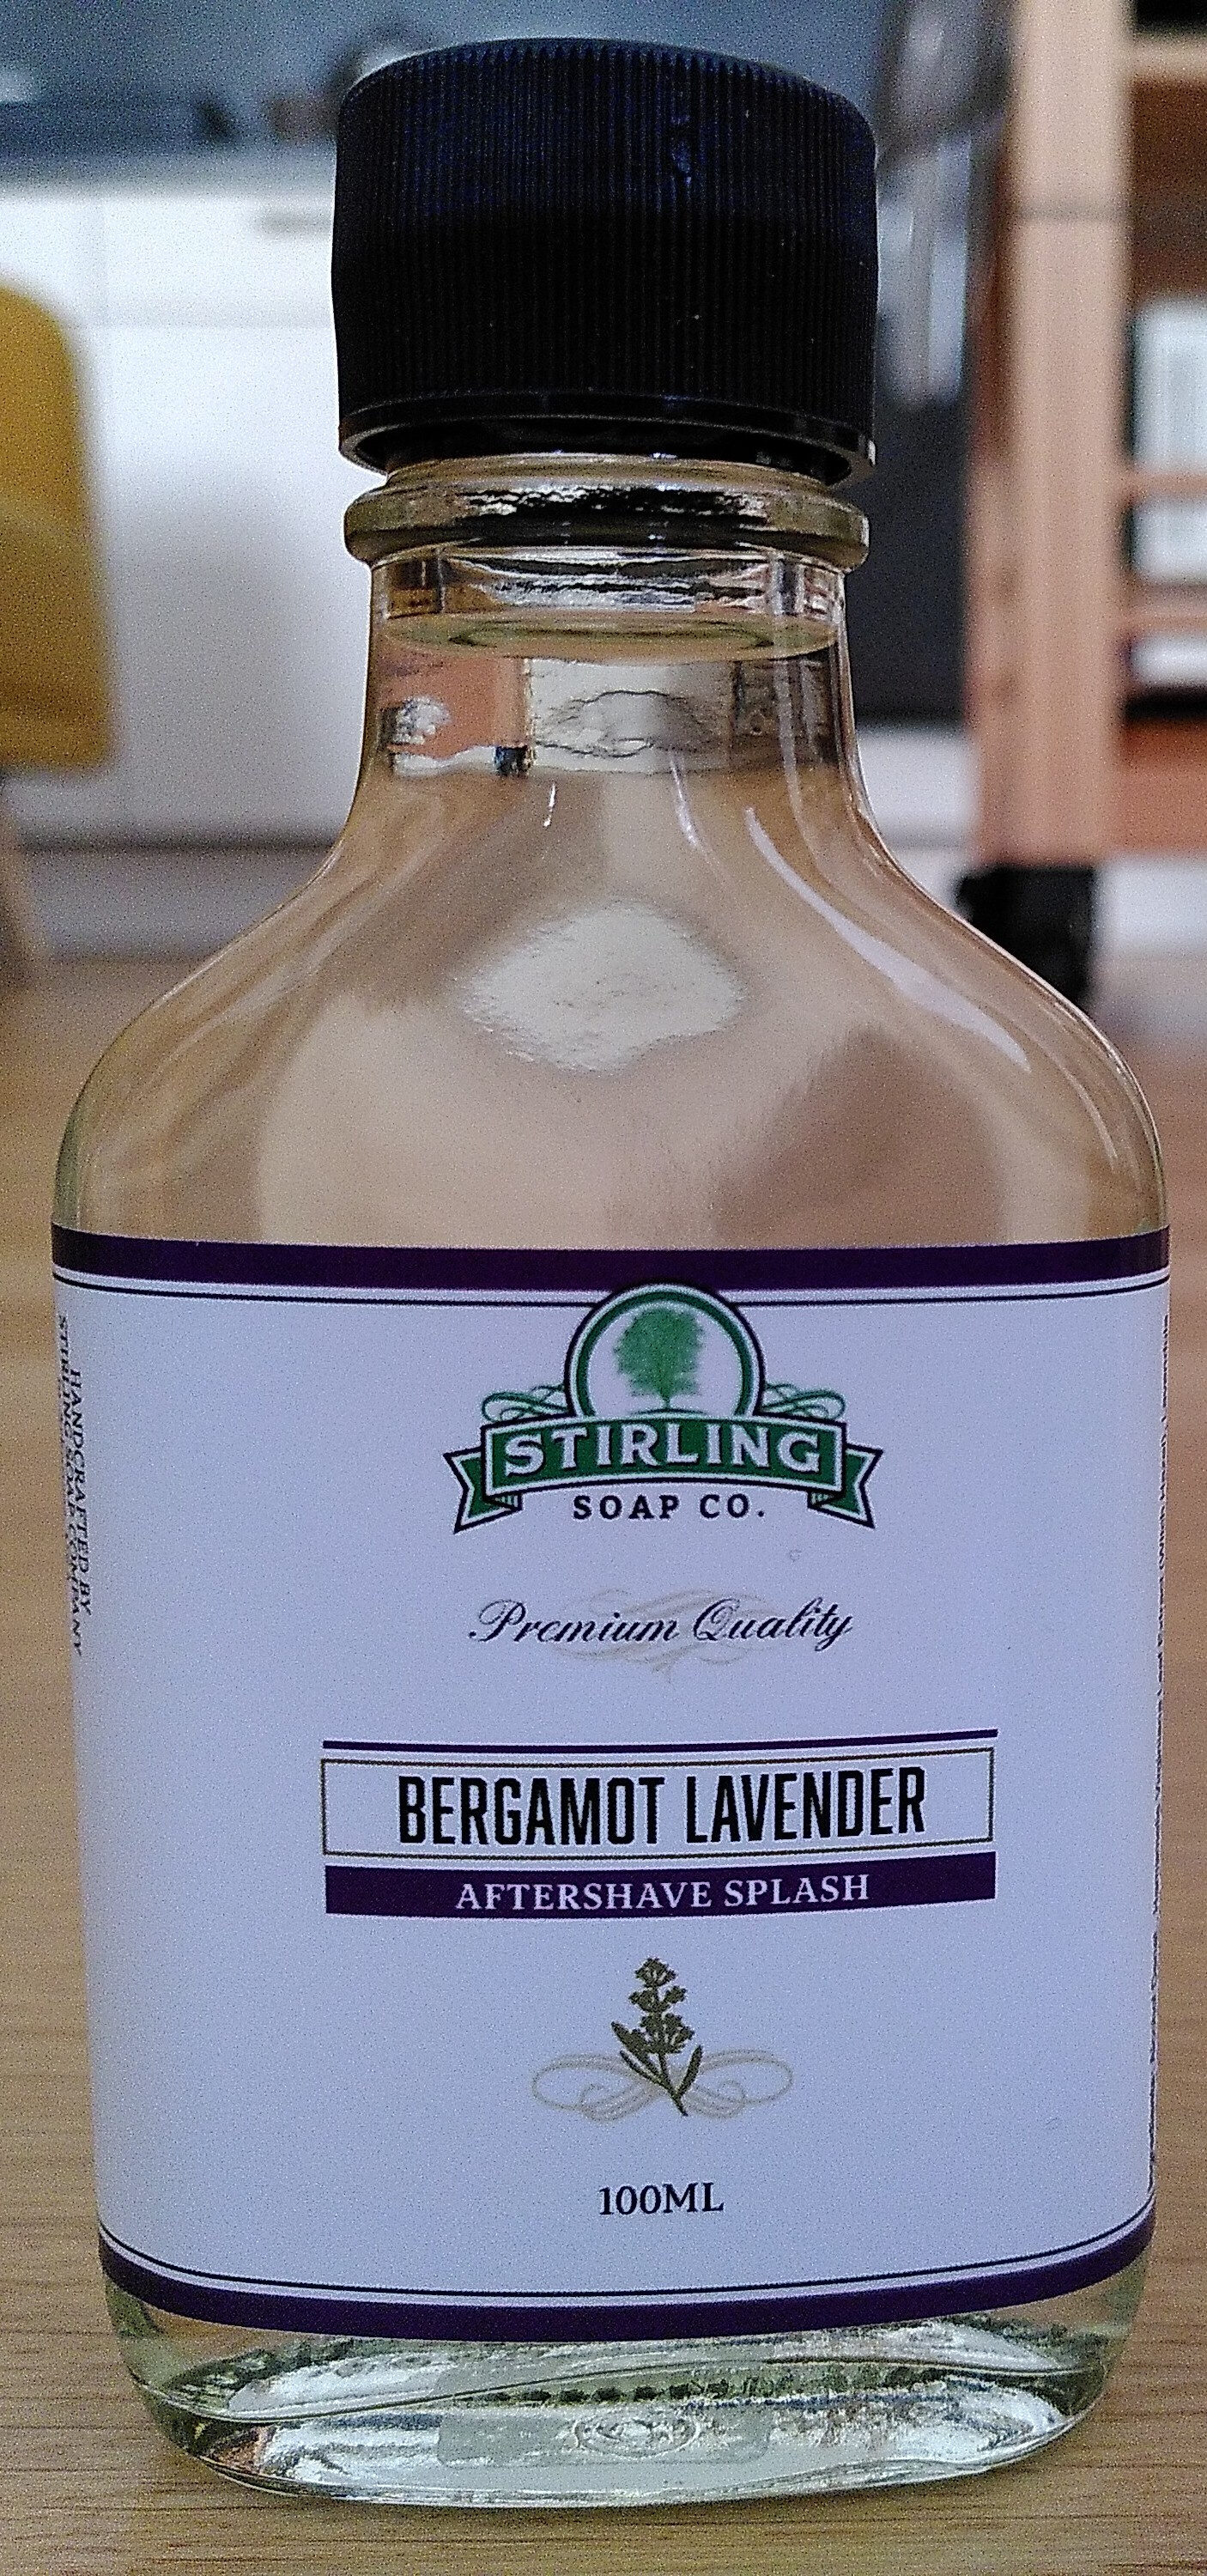 Bergamot Lavender Aftershave Splash - Produit - en